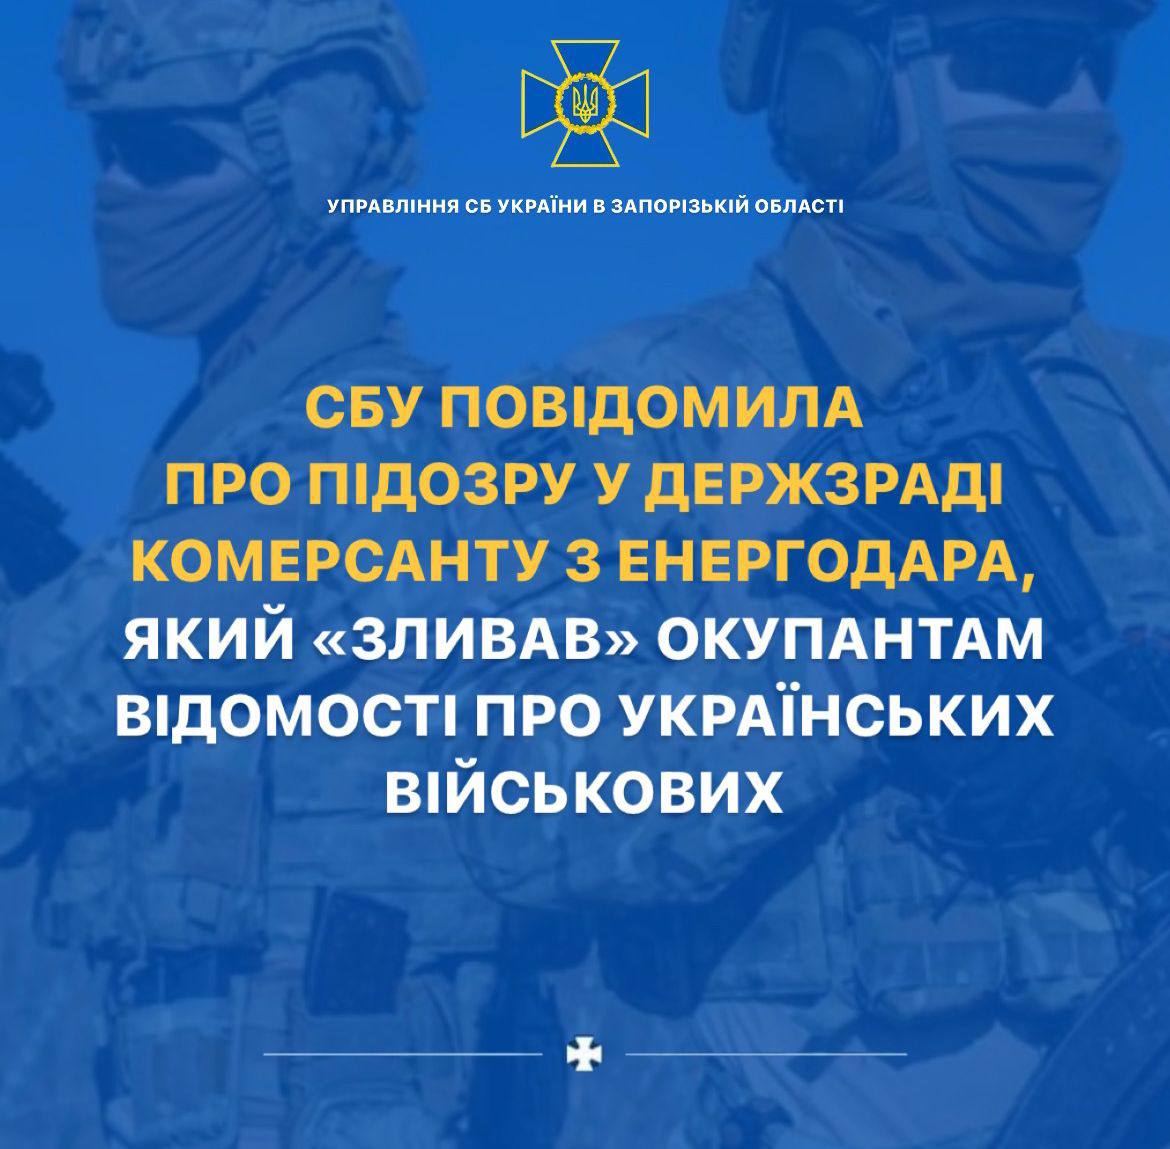 Зливав інформацію про українських військових – СБУ повідомила про підозру зраднику з Енергодара